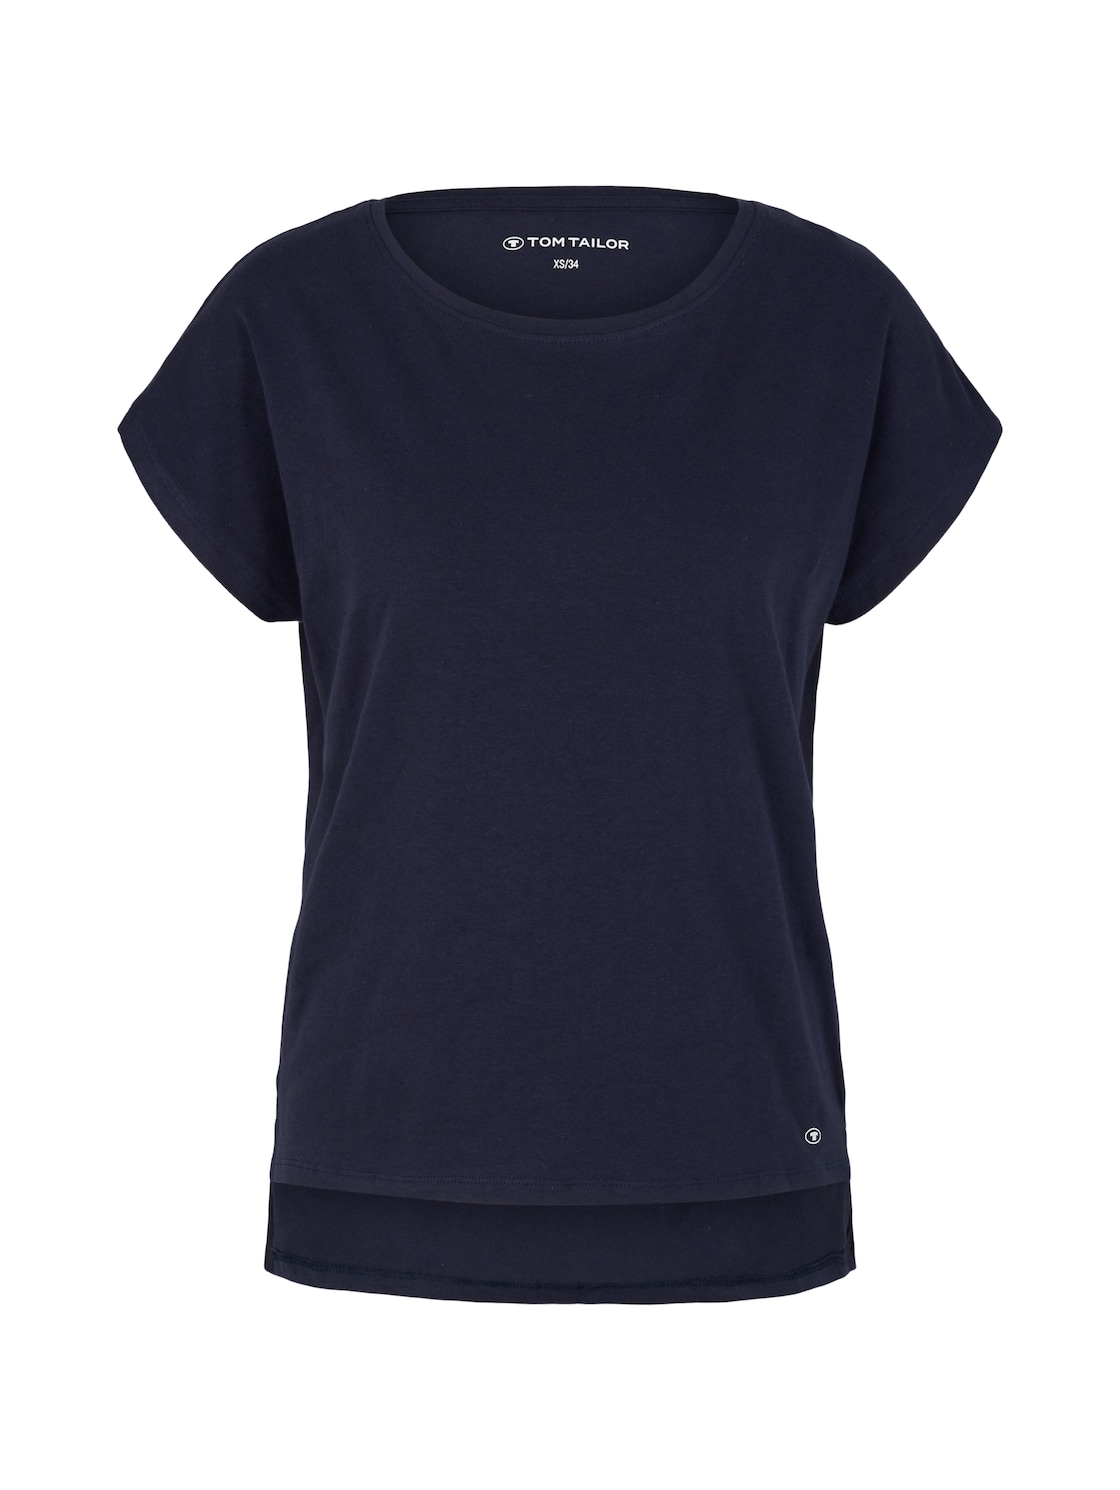 TOM TAILOR Damen T-Shirt mit Logo-Print, blau, Logo Print, Gr. 42 von Tom Tailor